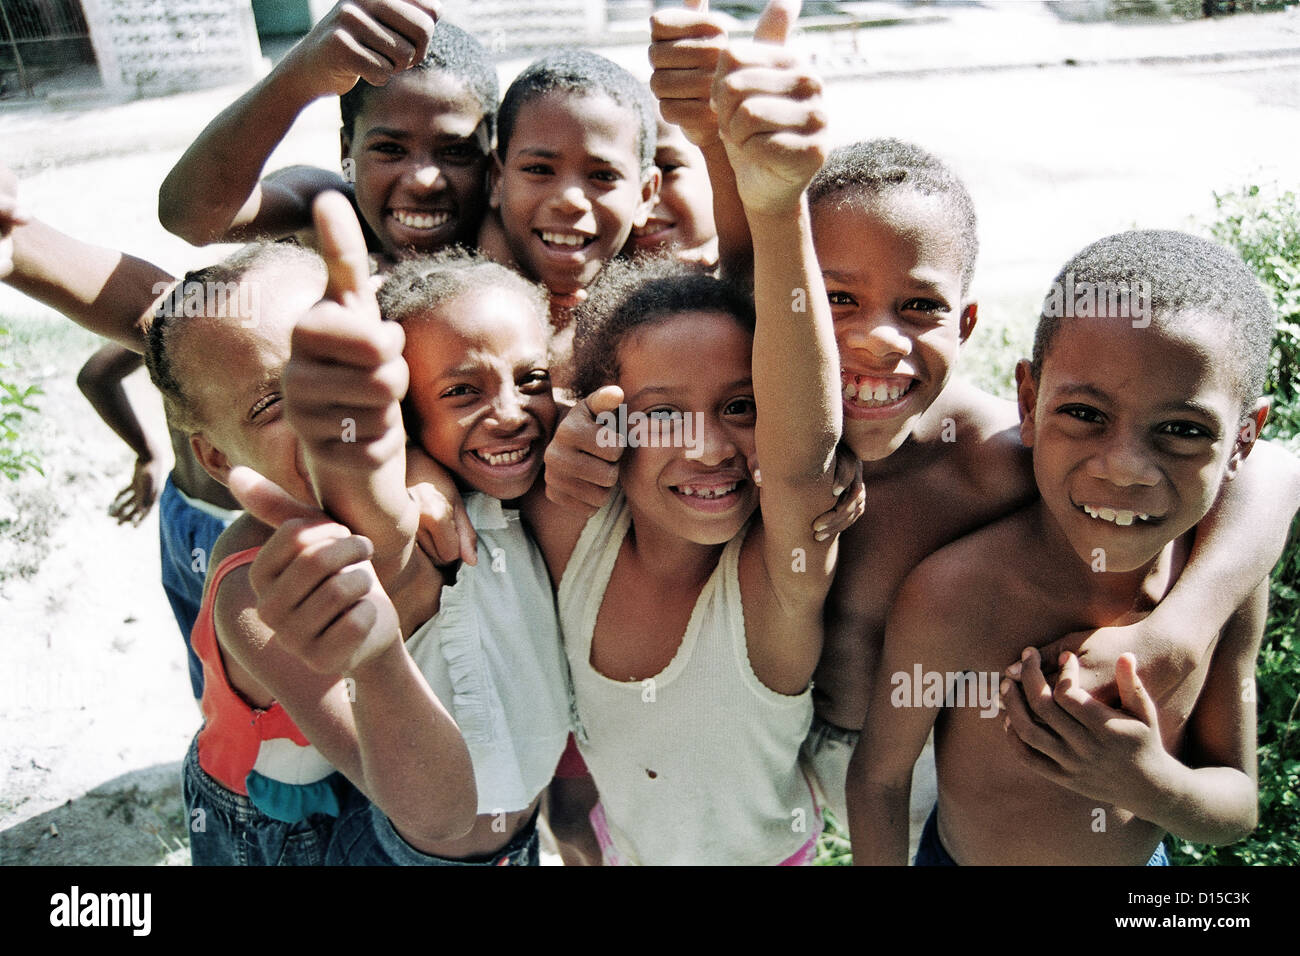 Santiago de Cuba, Cuba, boisterous, laughing children Stock Photo